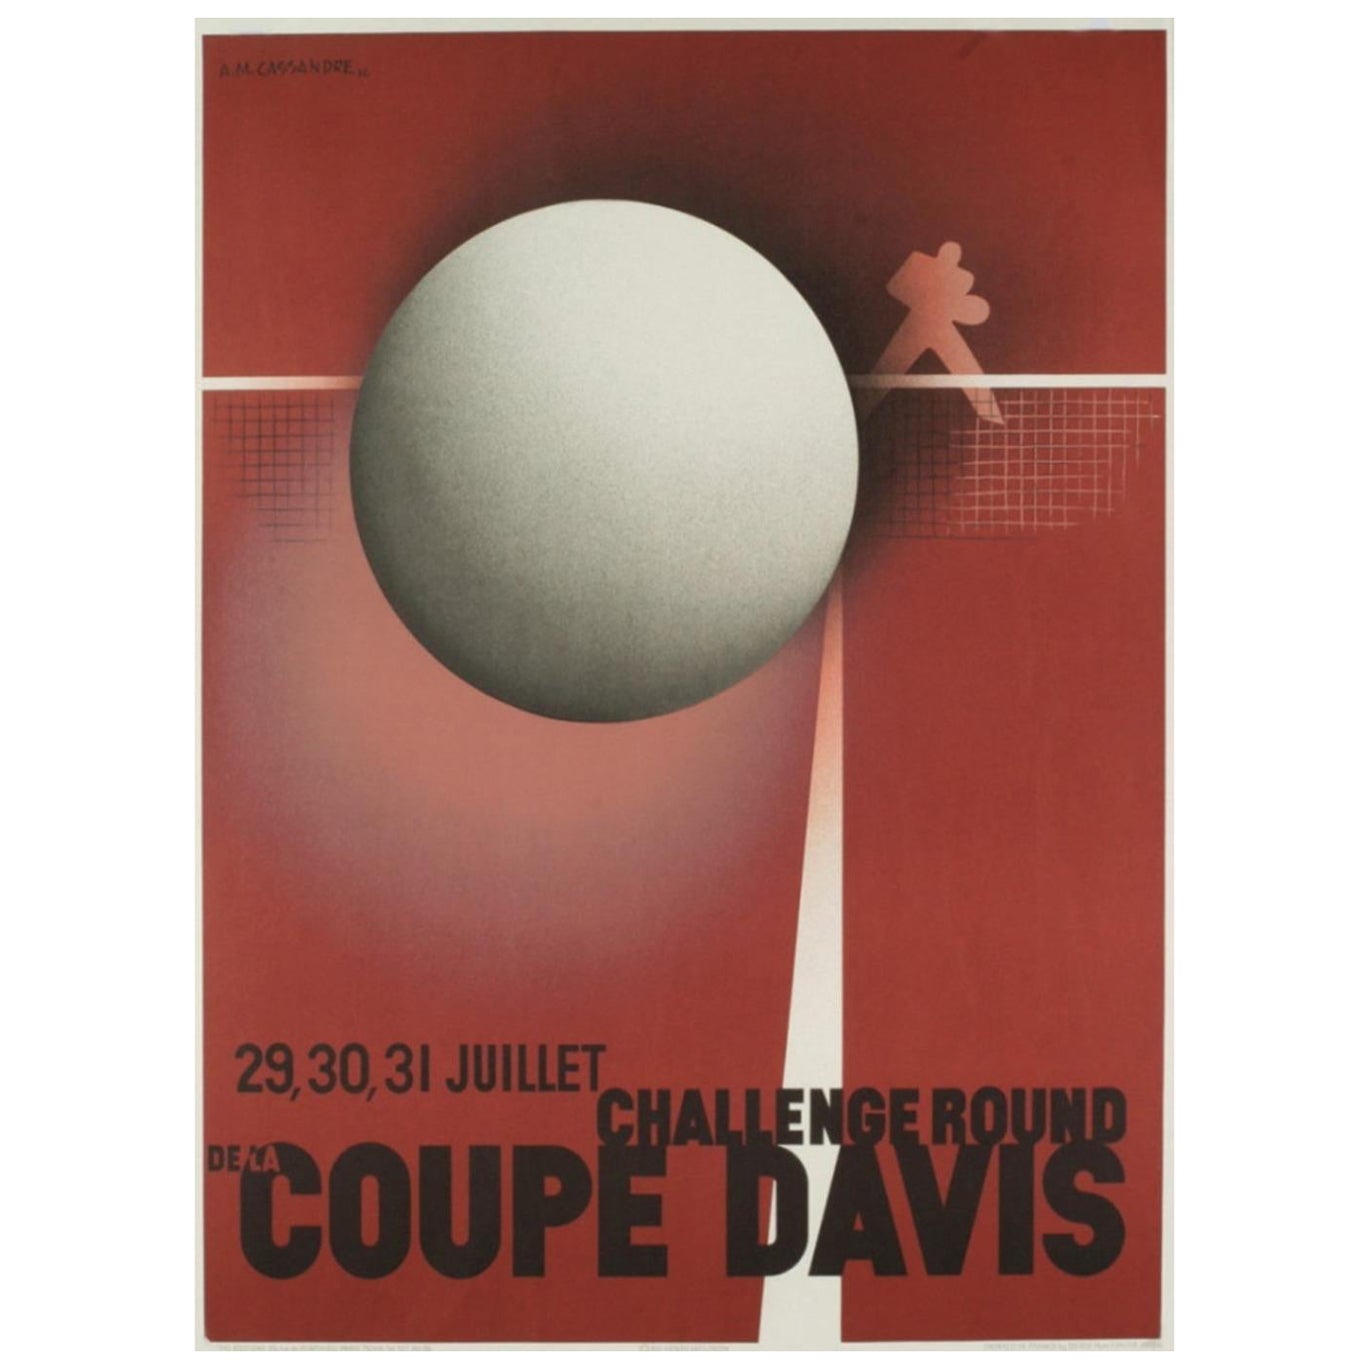 1980 Coupe Davis - A.M. Cassandre Original Vintage Poster For Sale